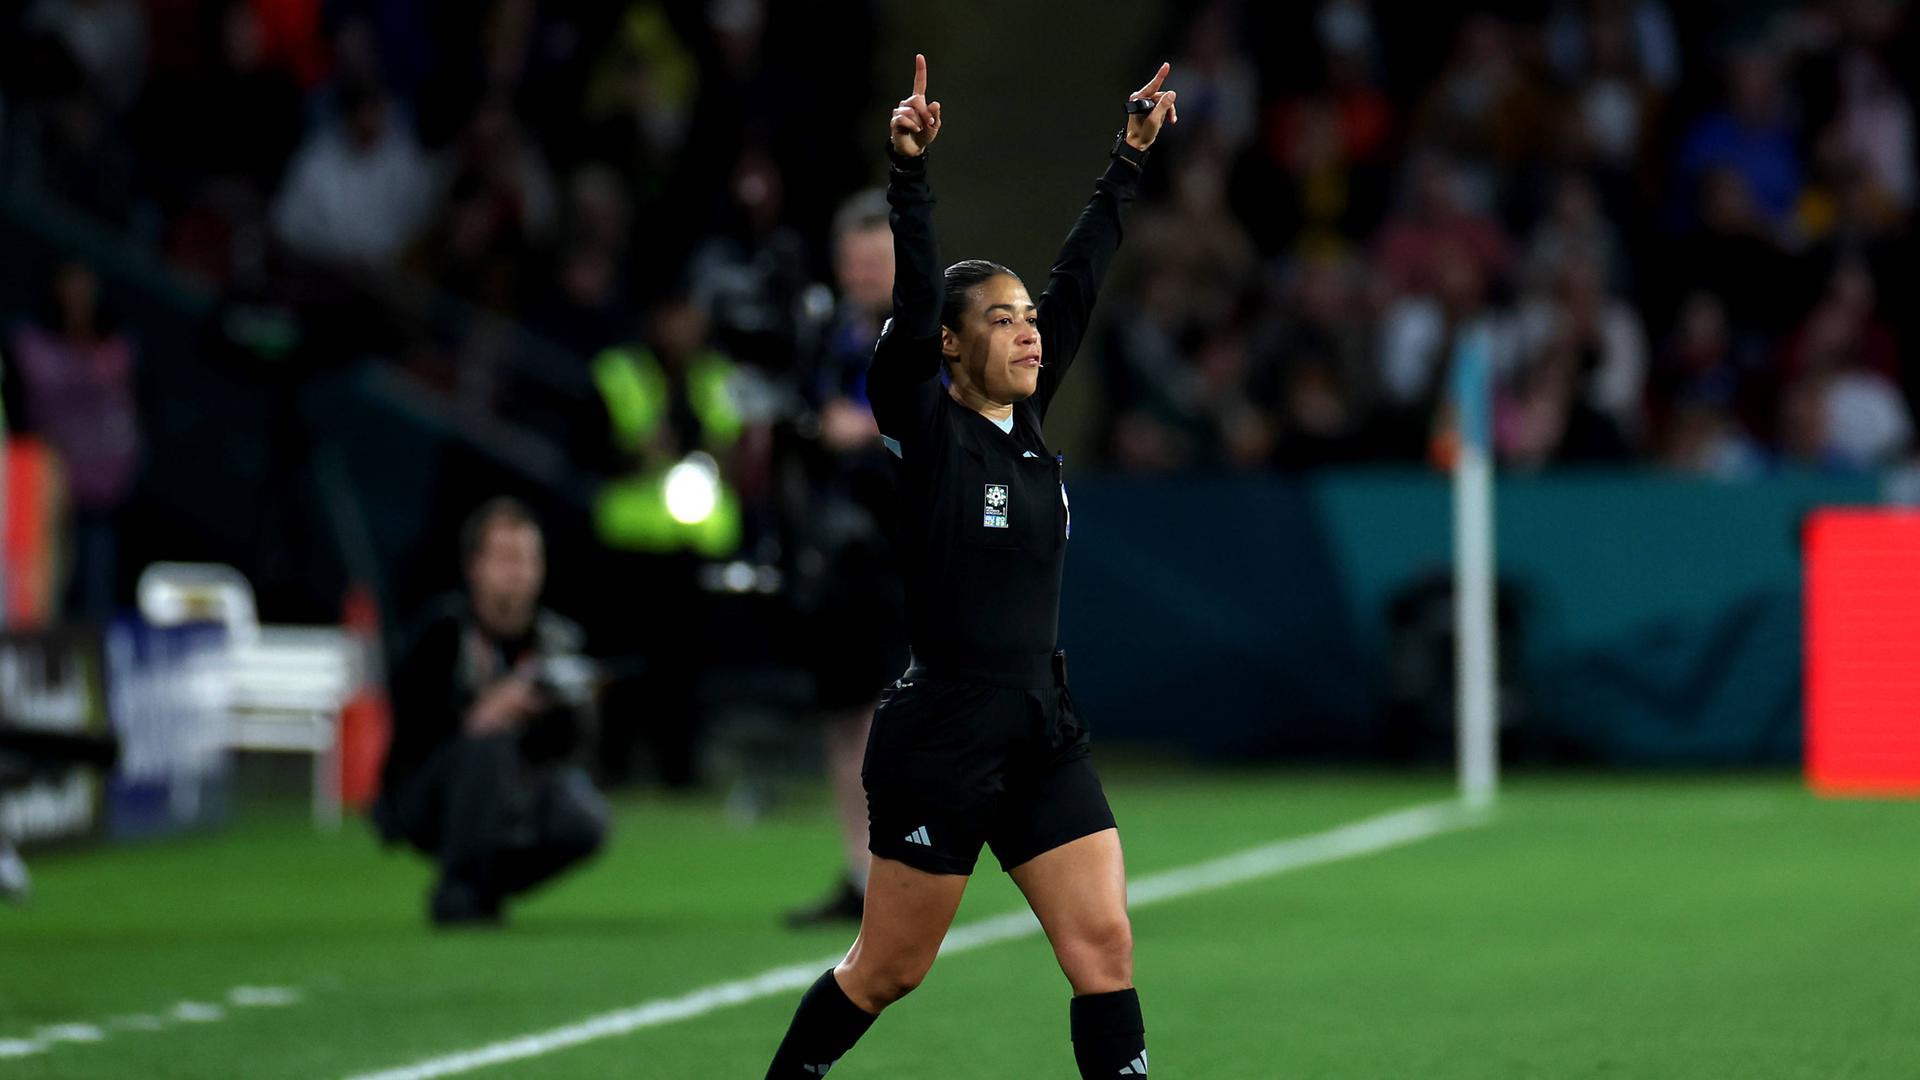 Die Schiedsrichterin Melissa Borjas entscheidet nach dem Videobeweis im WM-Spiel zwischen England und Nigeria gegen einen Strafstoß für die Engländerinnen. 